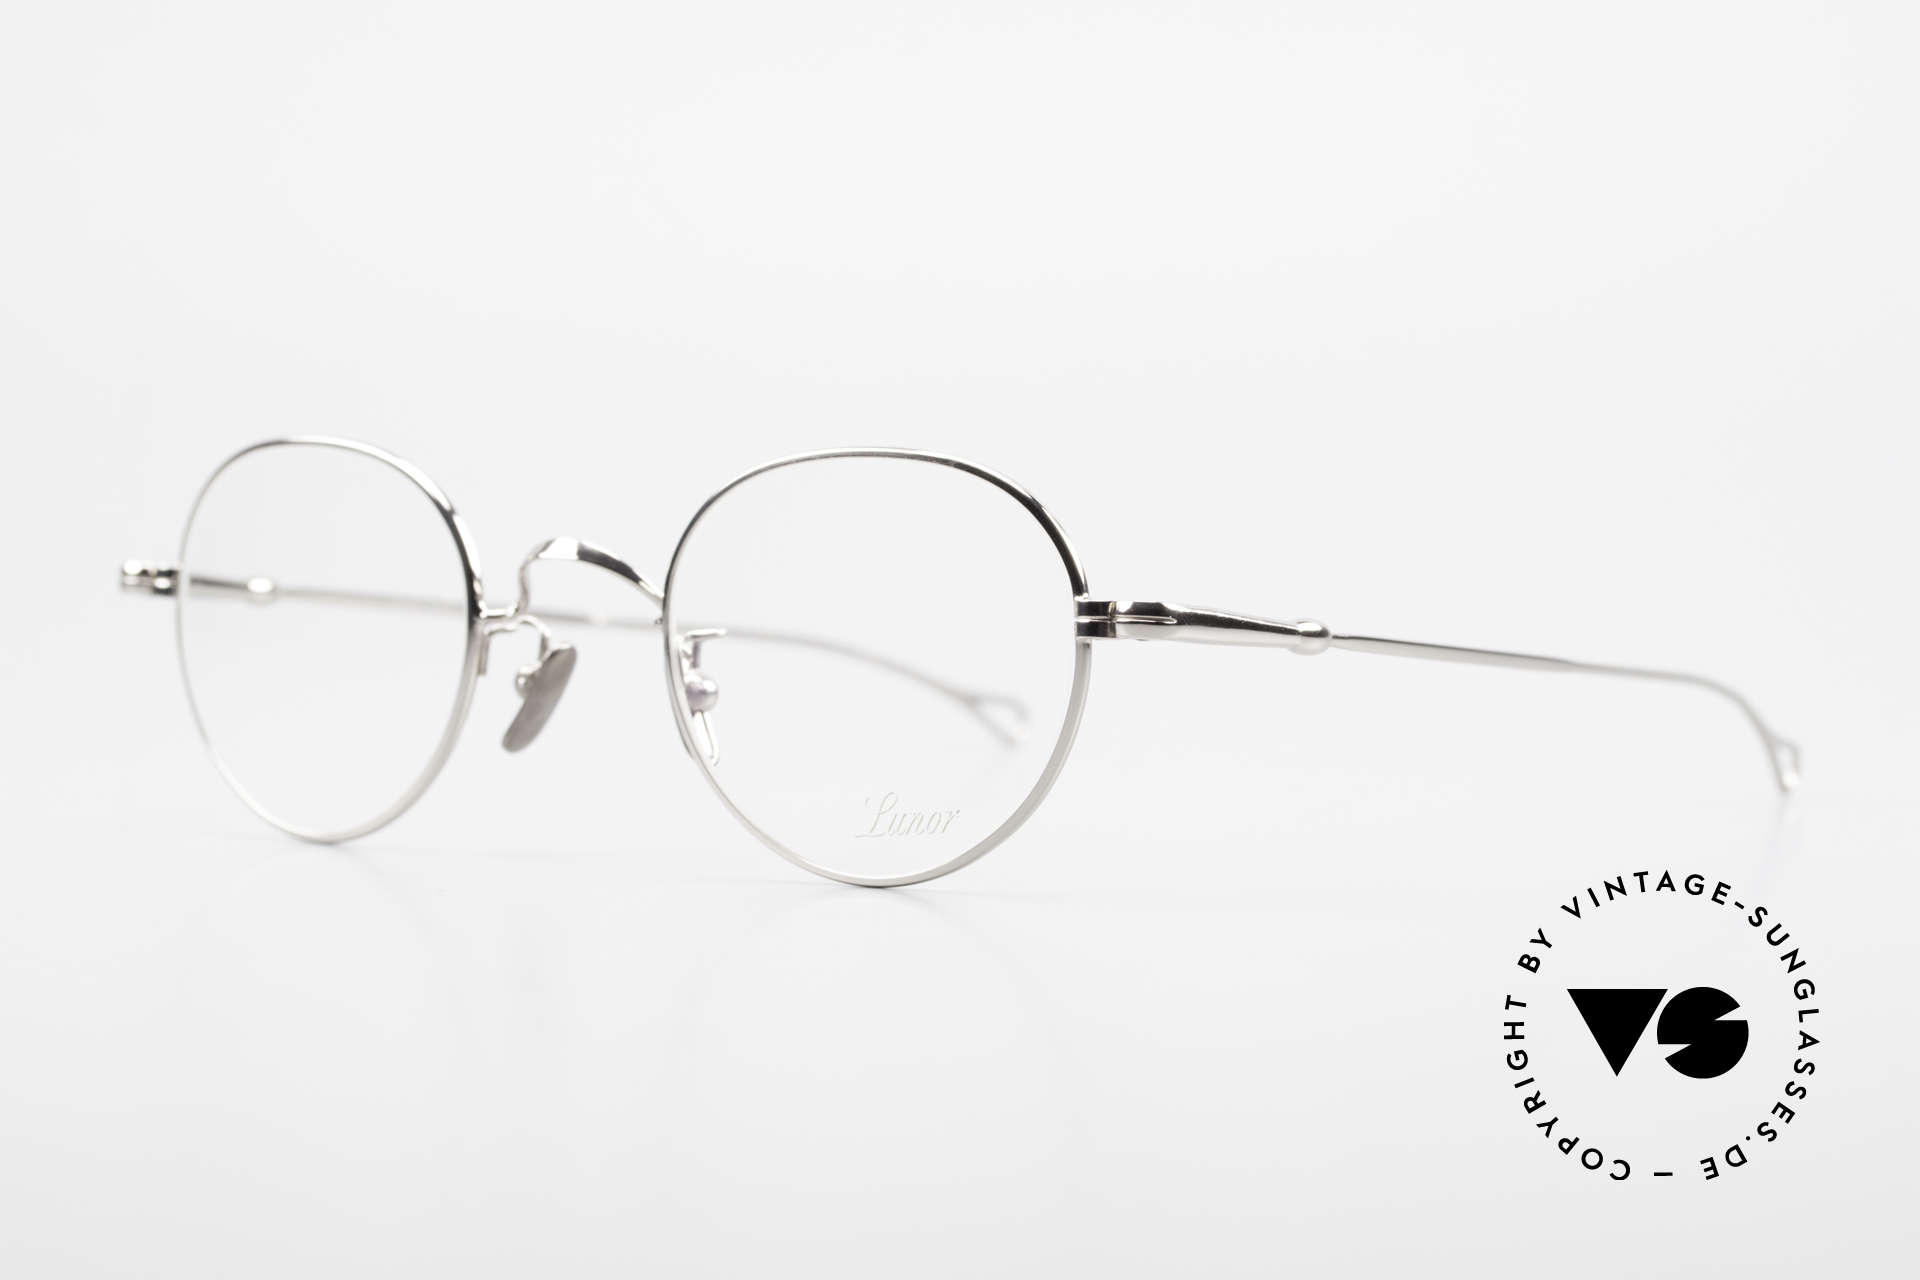 Lunor V 108 Panto Frame Platinum Plated, model V 108: very elegant Panto glasses for gentlemen, Made for Men